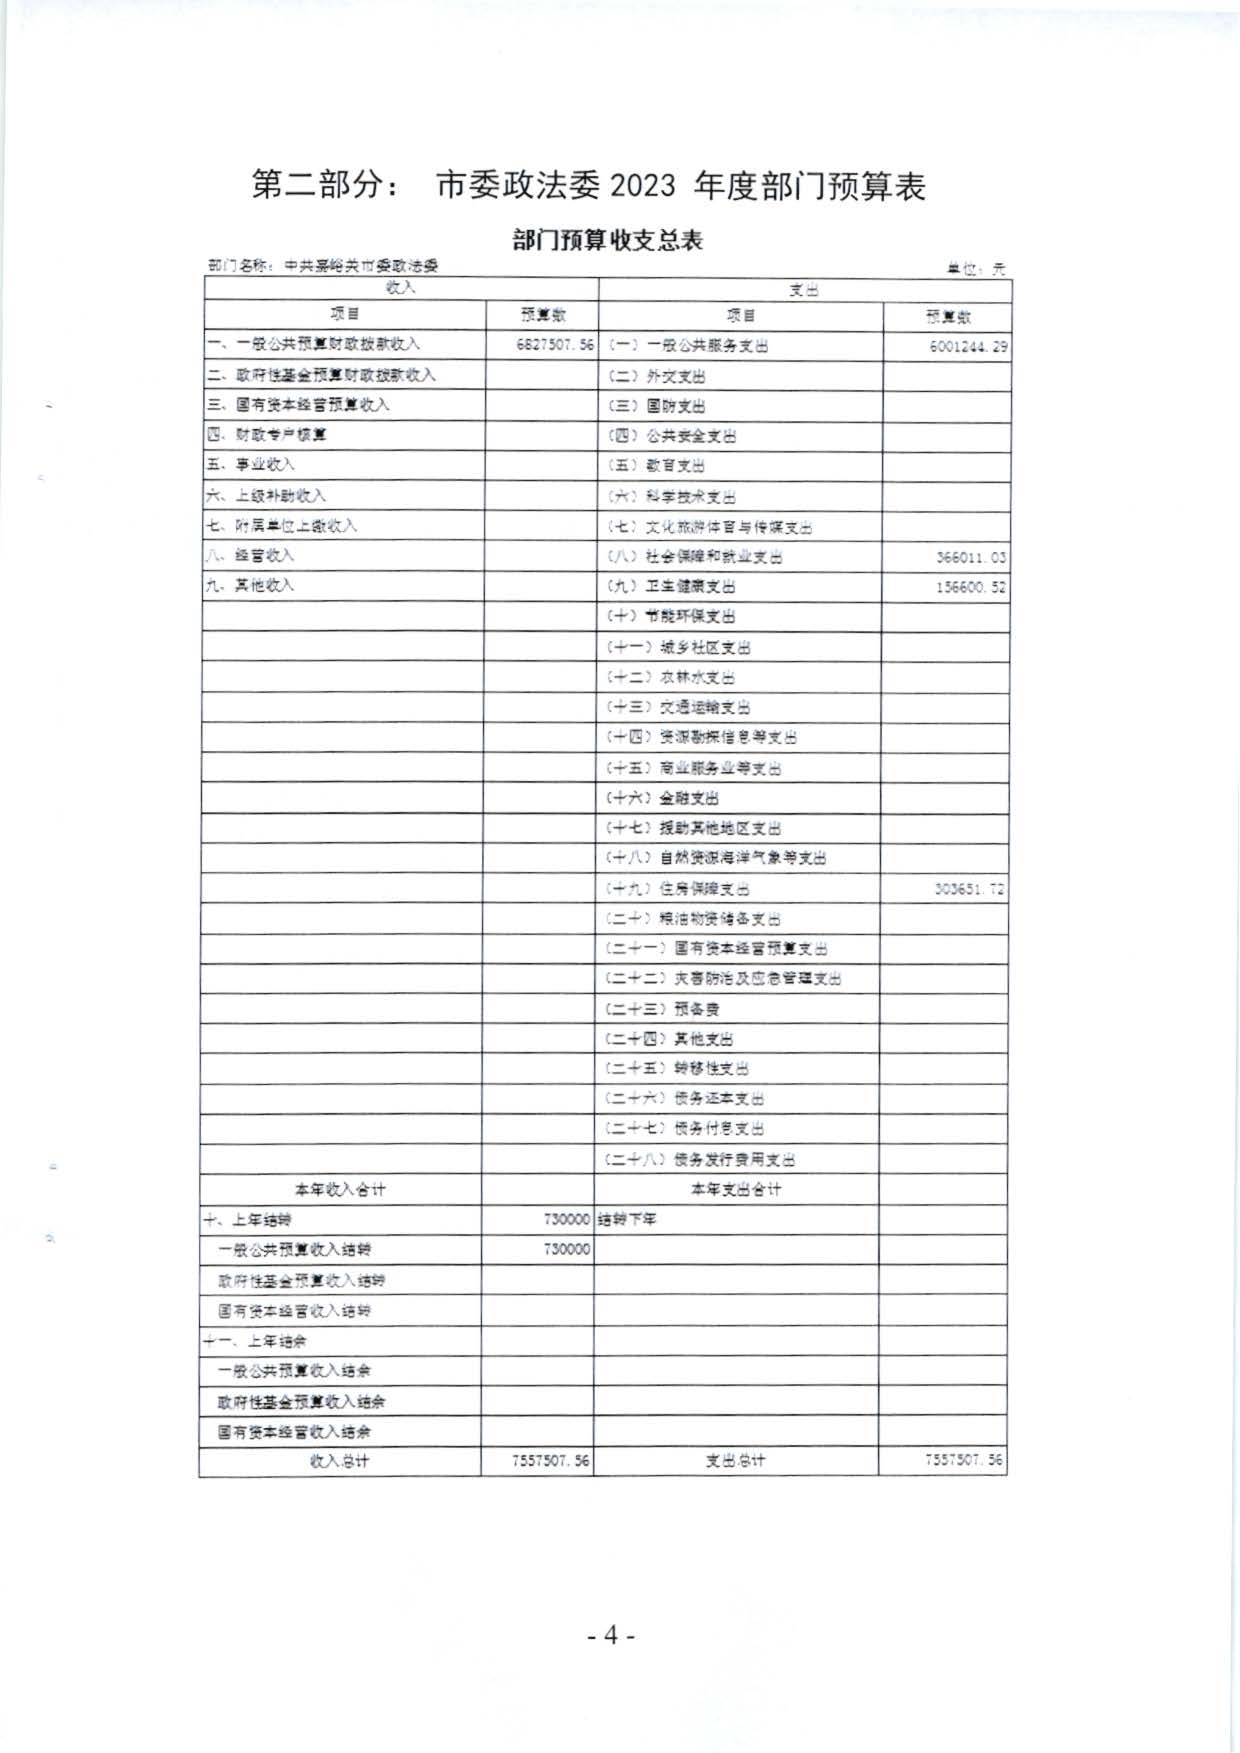 嘉峪关市委政法委2023年预算公开情况说明(1)_页面_04